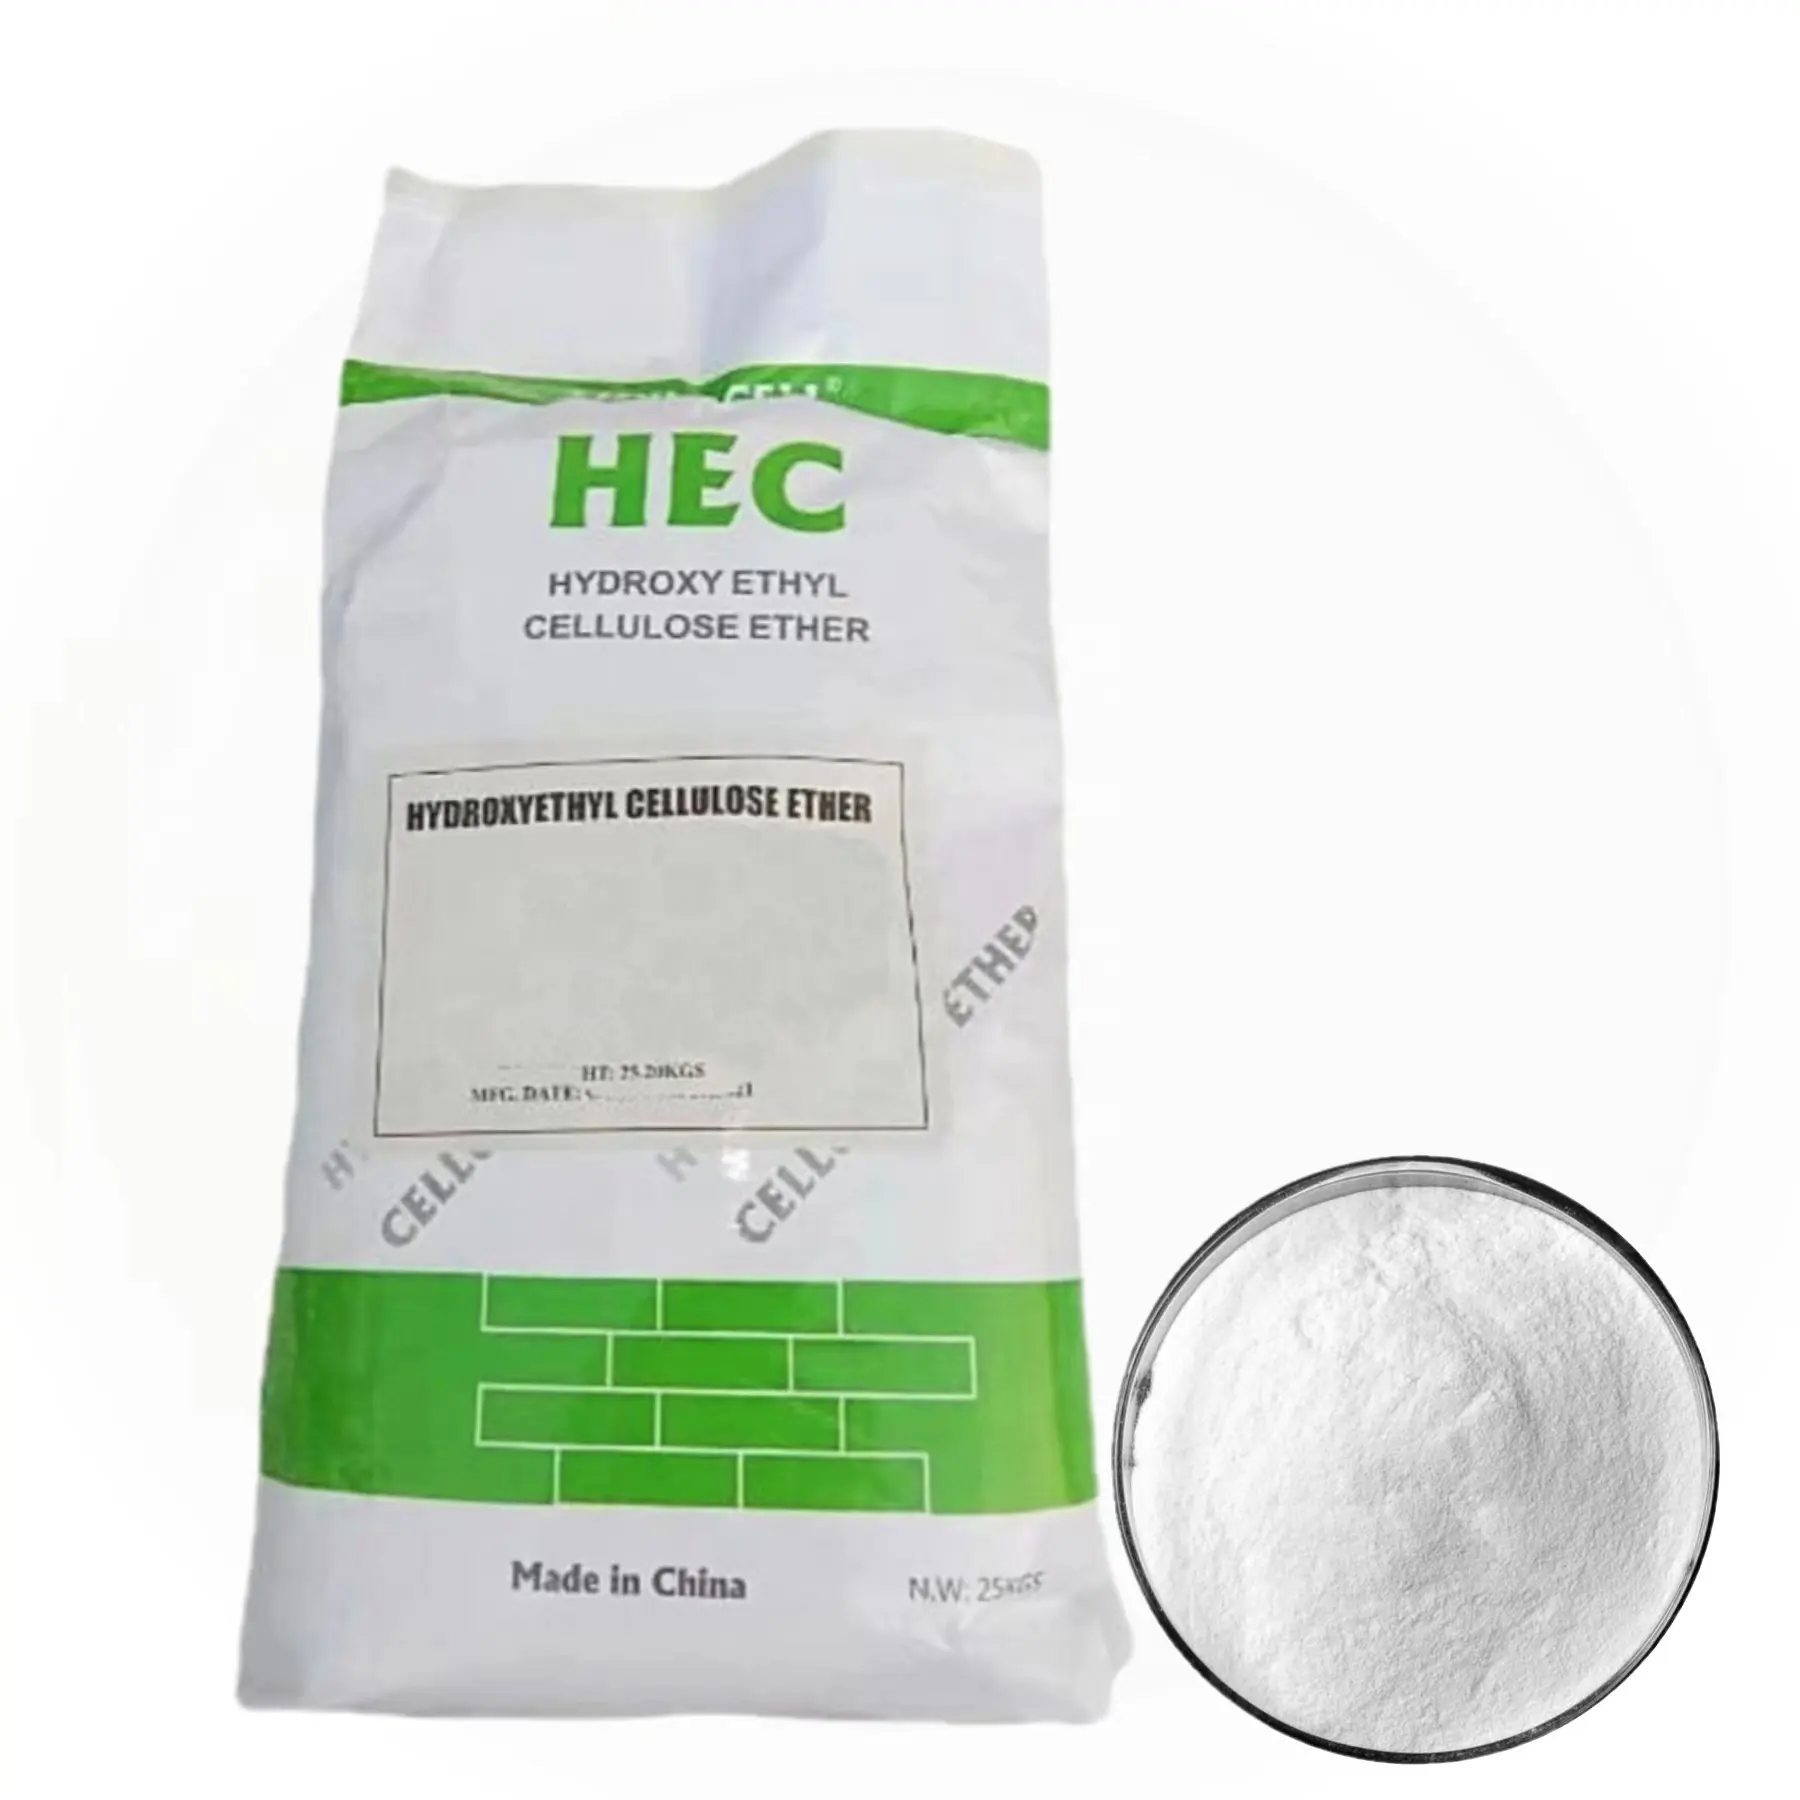 เซลลูโลสอีเทอร์ชุดเมทิลไฮดรอกไซเซลลูโลสผงสีขาวสารเติมแต่งสำหรับอุดรูผนัง HPMC HEC HEMC เอทิลไฮดรอกซีเอทิลไฮดรอกซีเอทิลเซลลูโลส